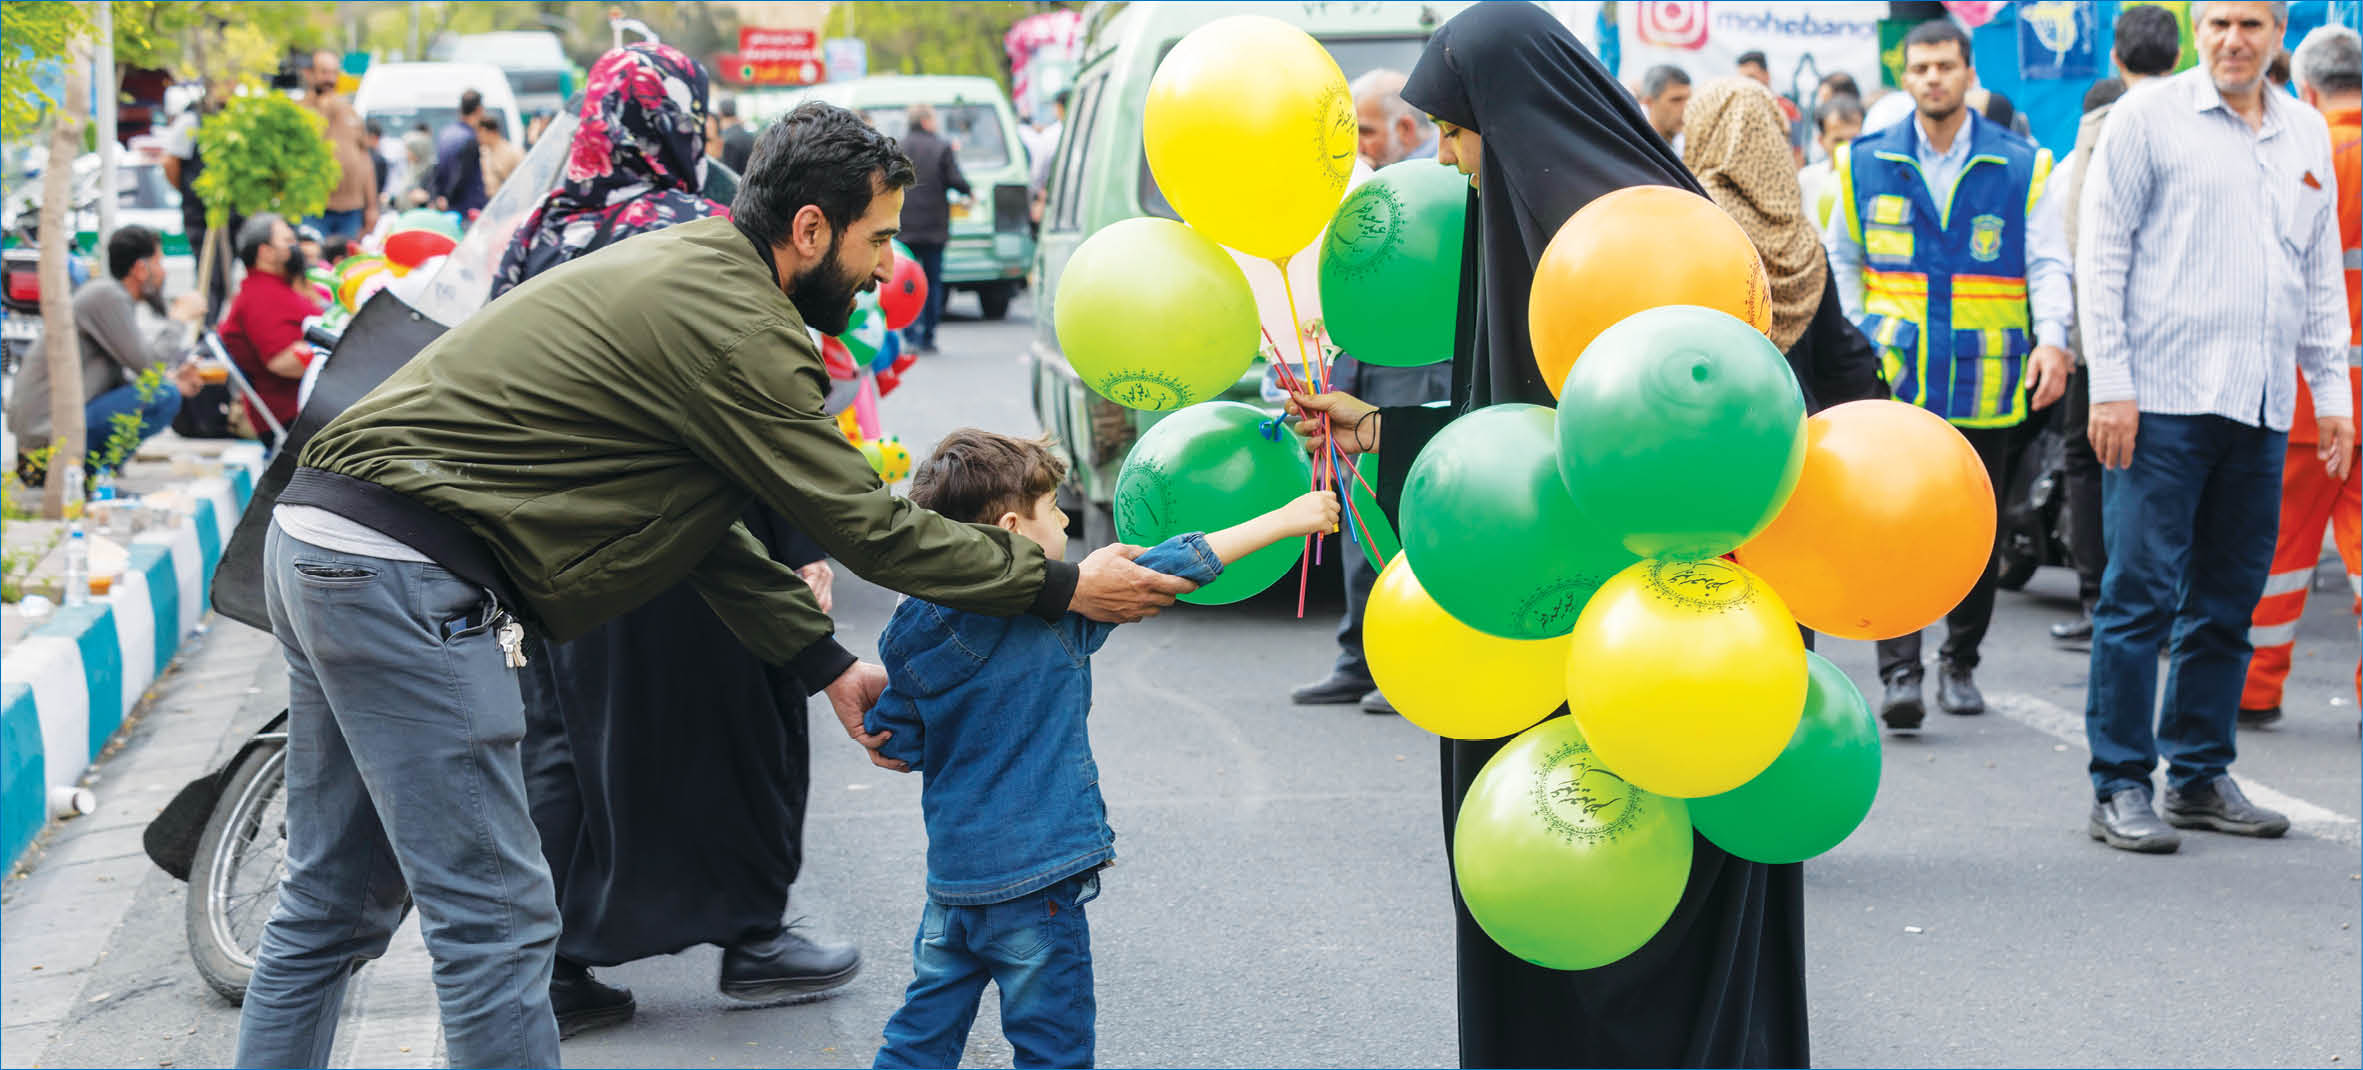 اقدامات فرهنگی و خدماتی شهرداری تهران در نماز عیدسعید فطر امسال و تفاوت های آن با سال های قبل